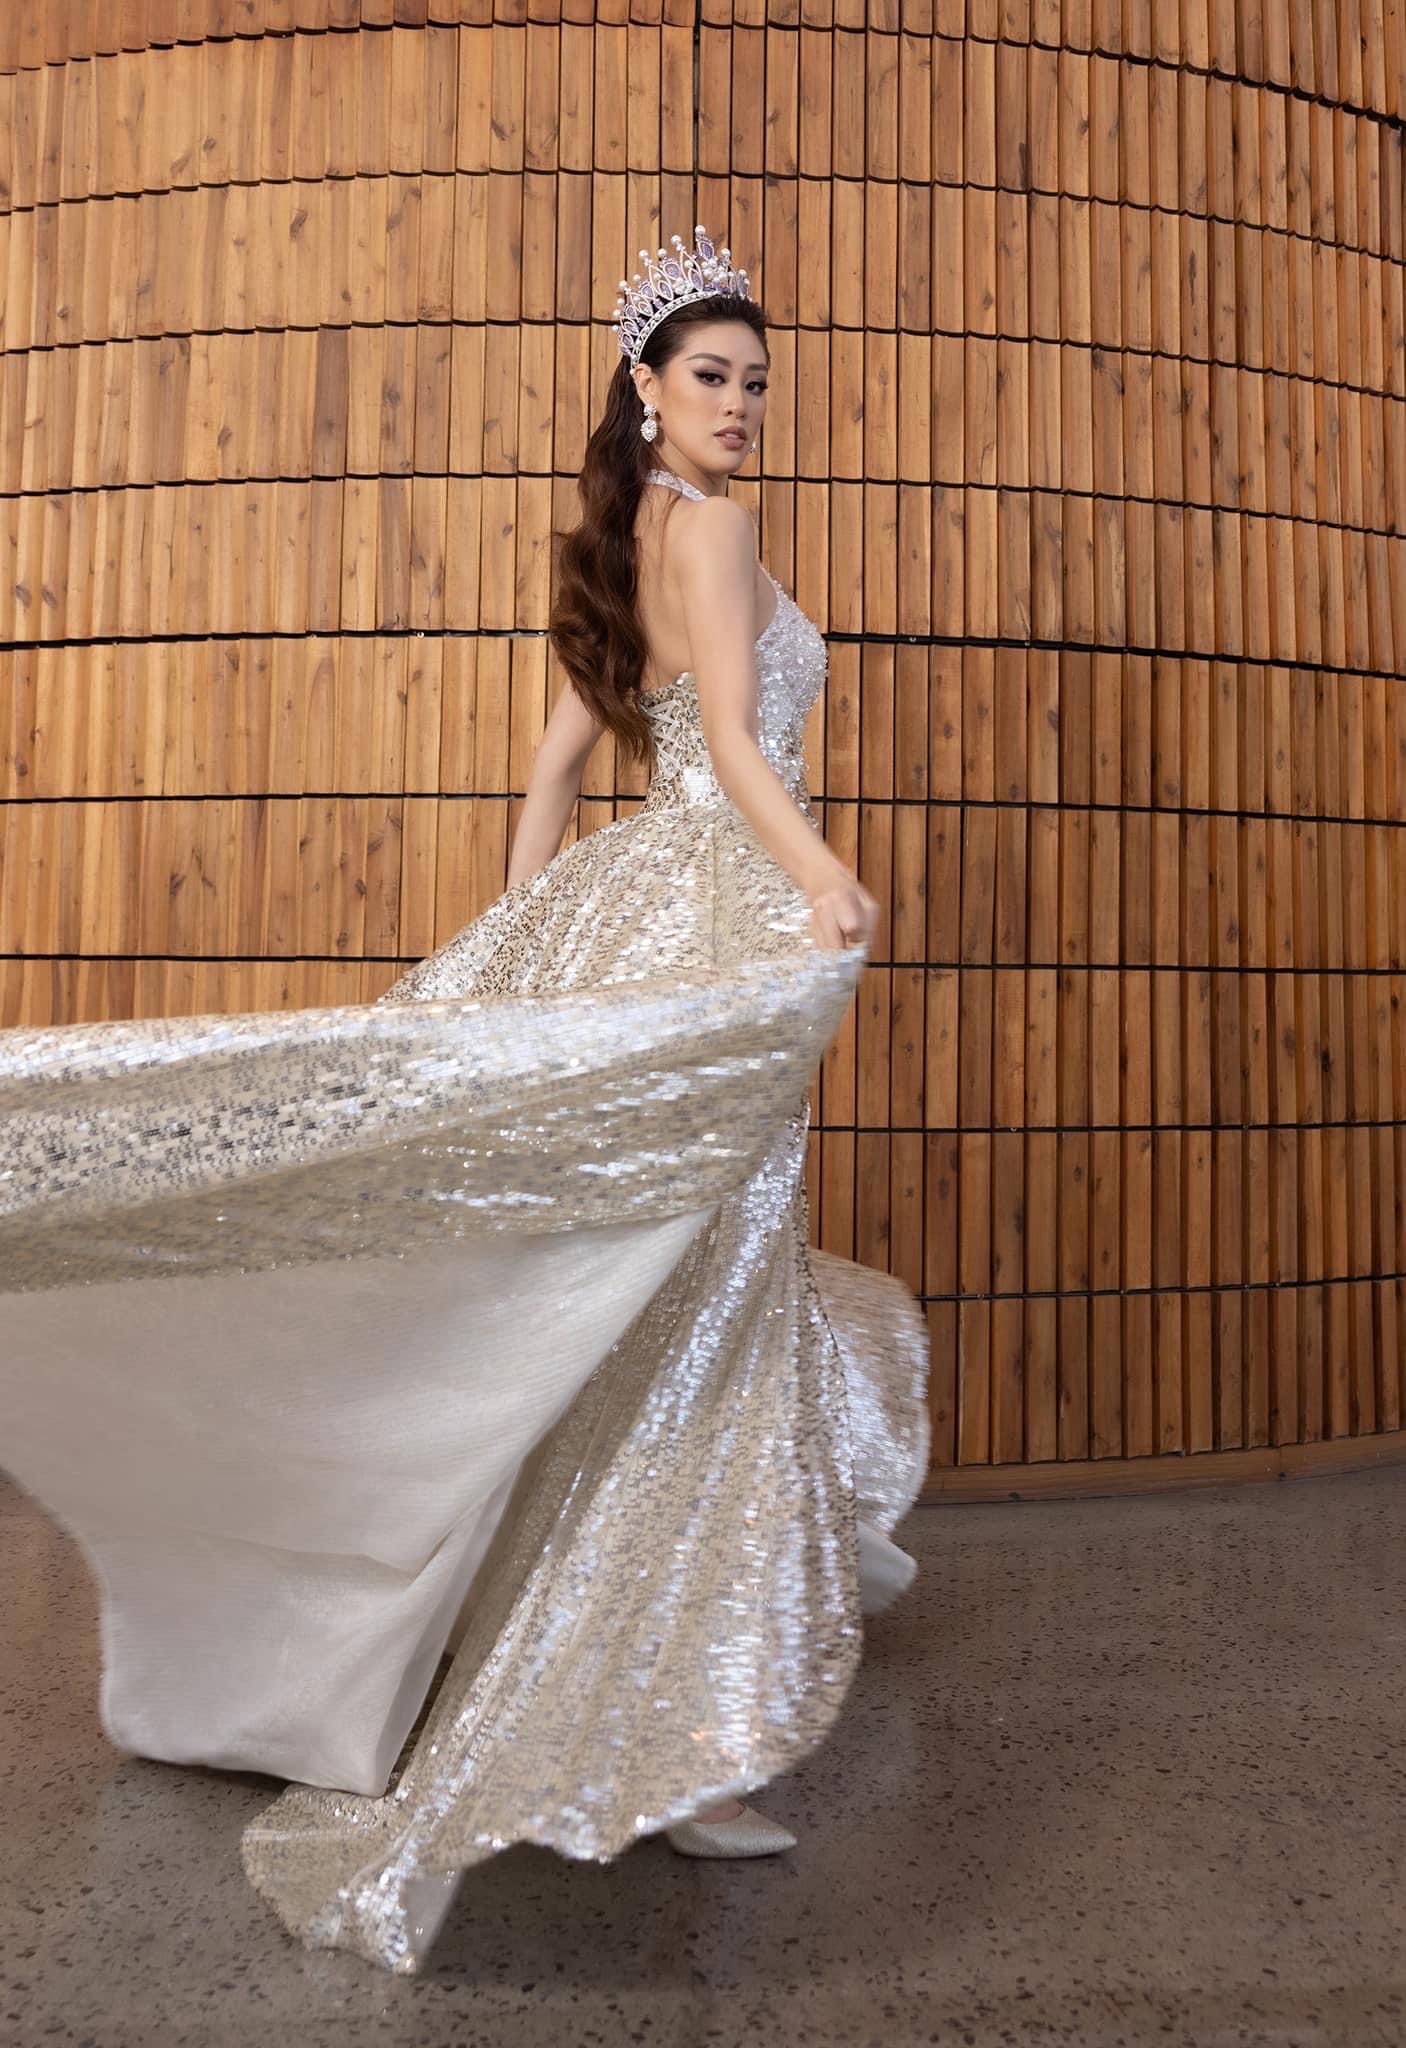 Váy áo của Khánh Vân tại Miss Universe Vietnam 2022 luôn nổi bật và có sự đầu tư. Trong outfit này, cô chọn tông bạc làm chủ đạo.